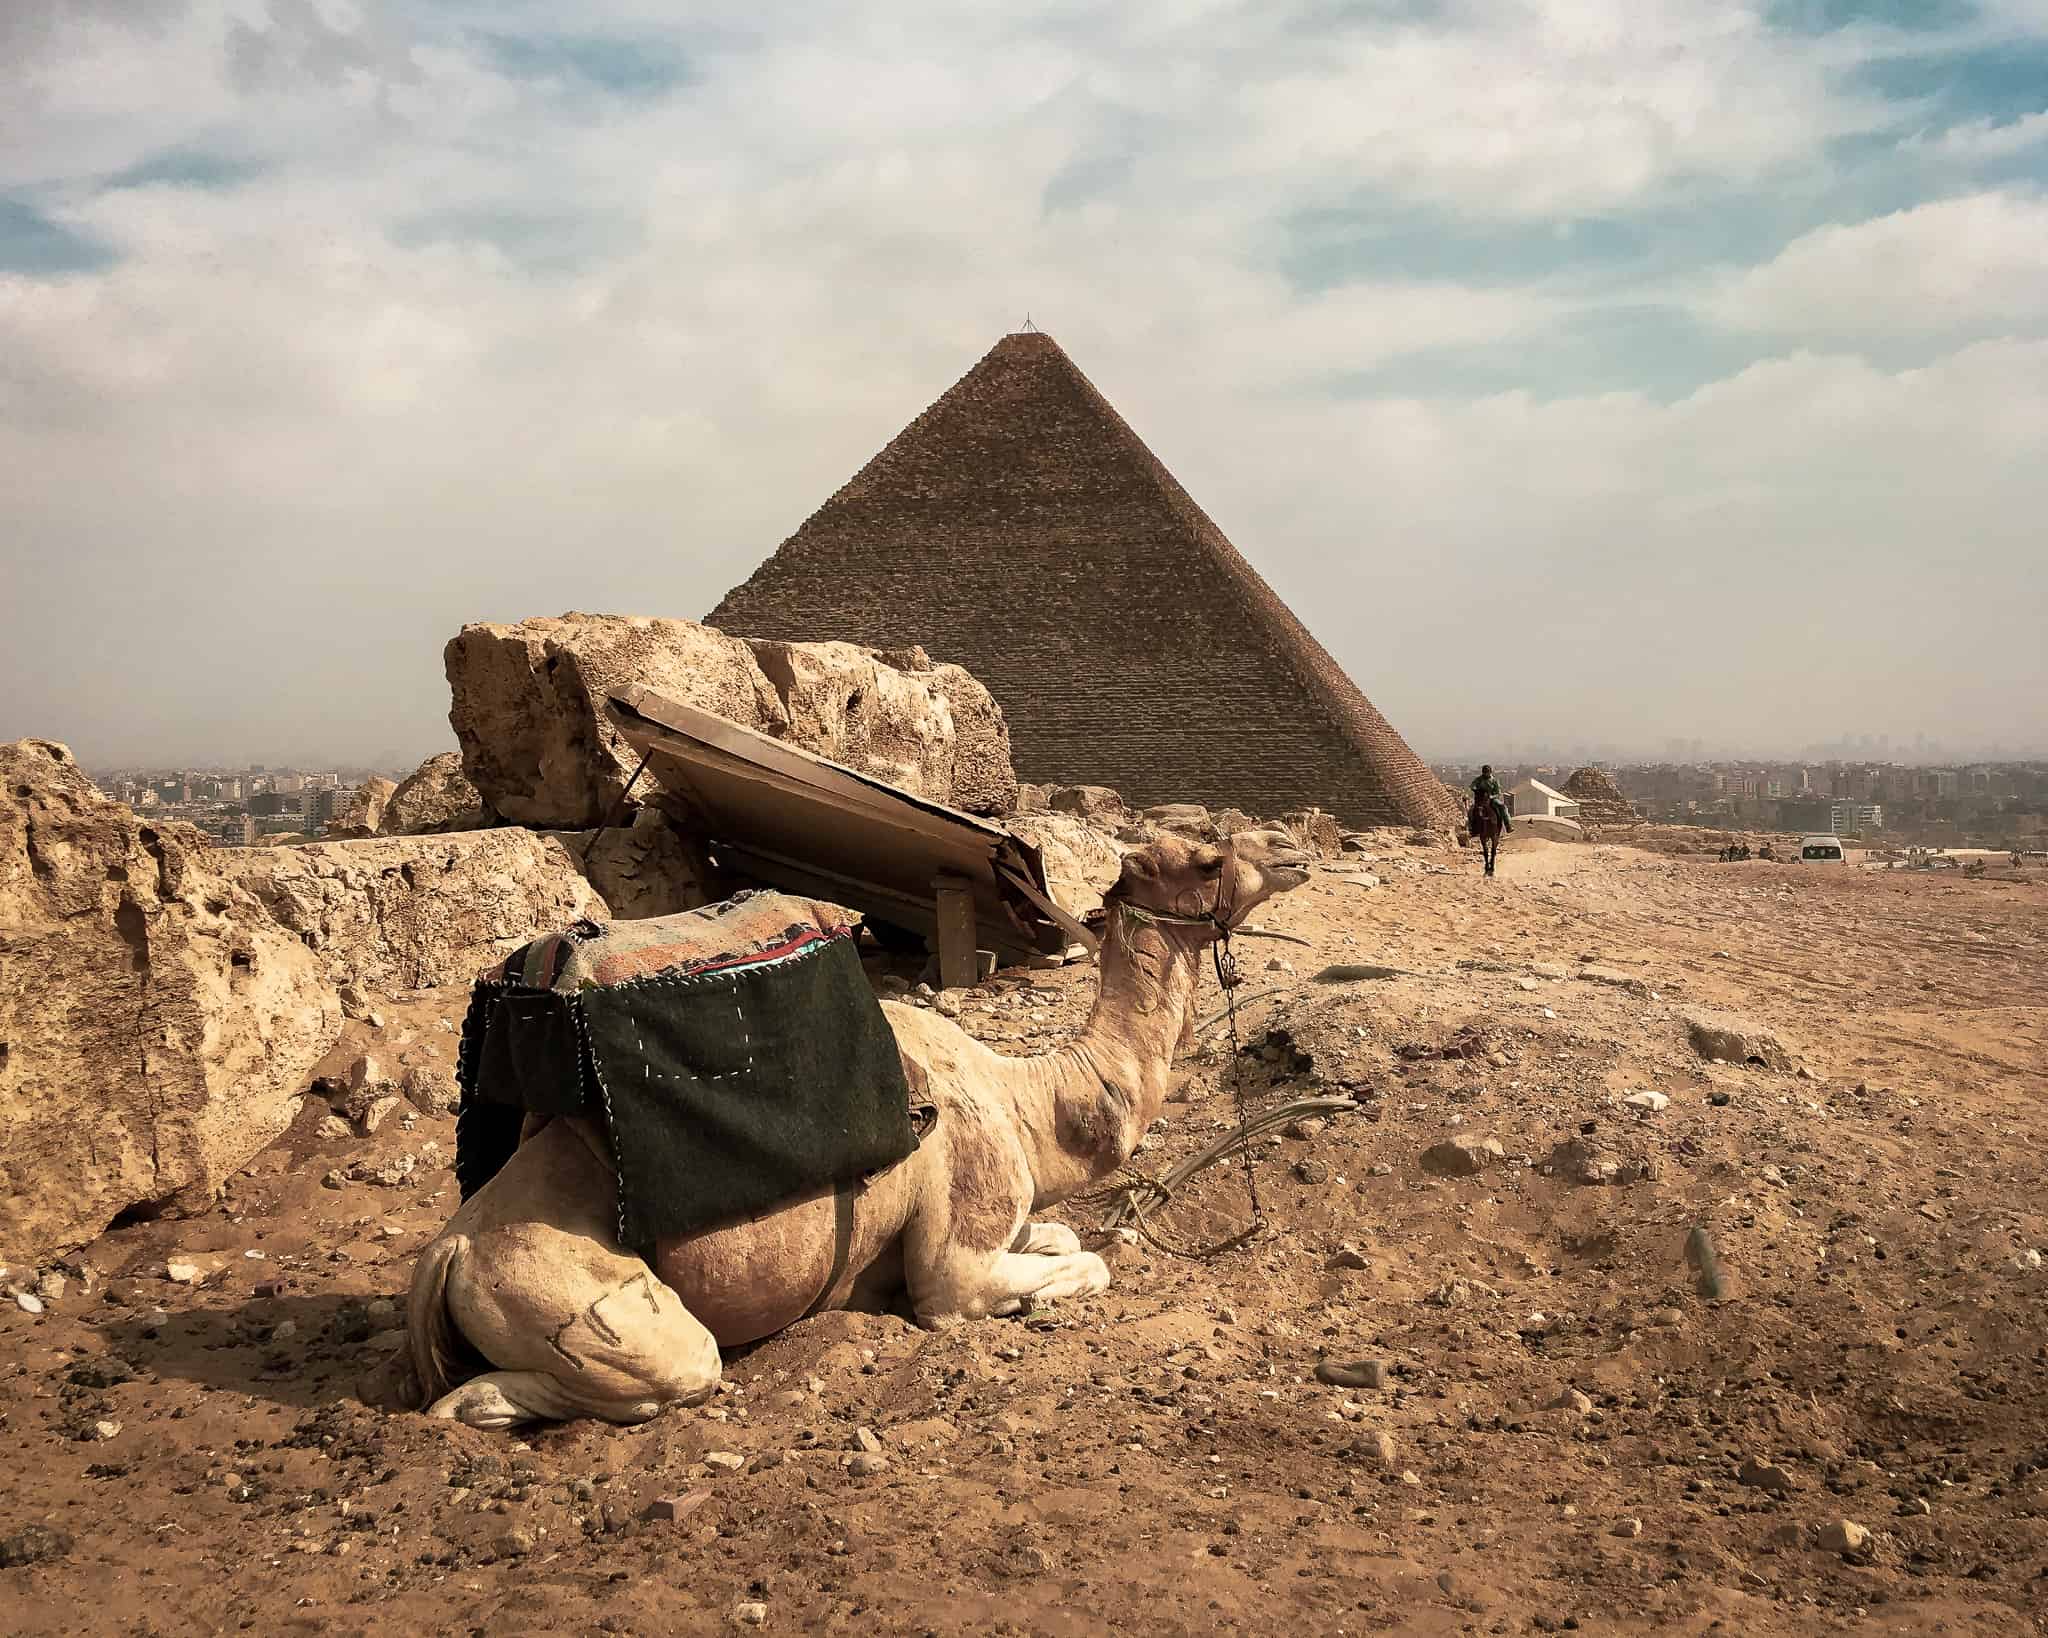 A camel at the Pyramids of Giza